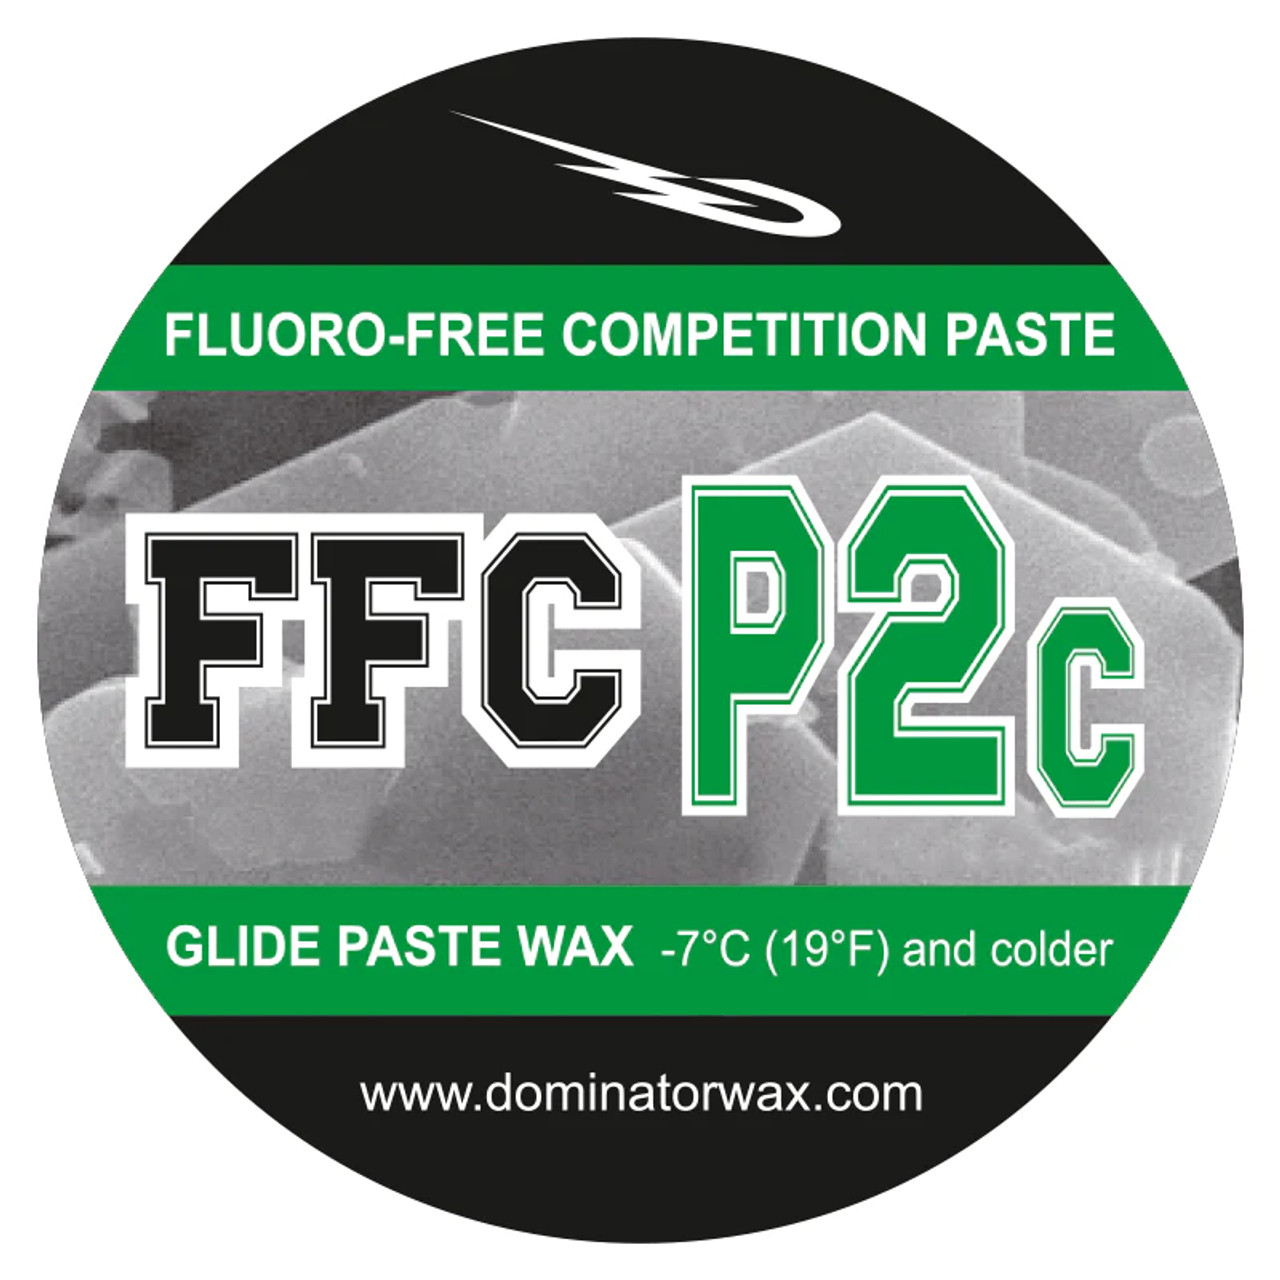 Dominator paste wax ffc p2c 100g